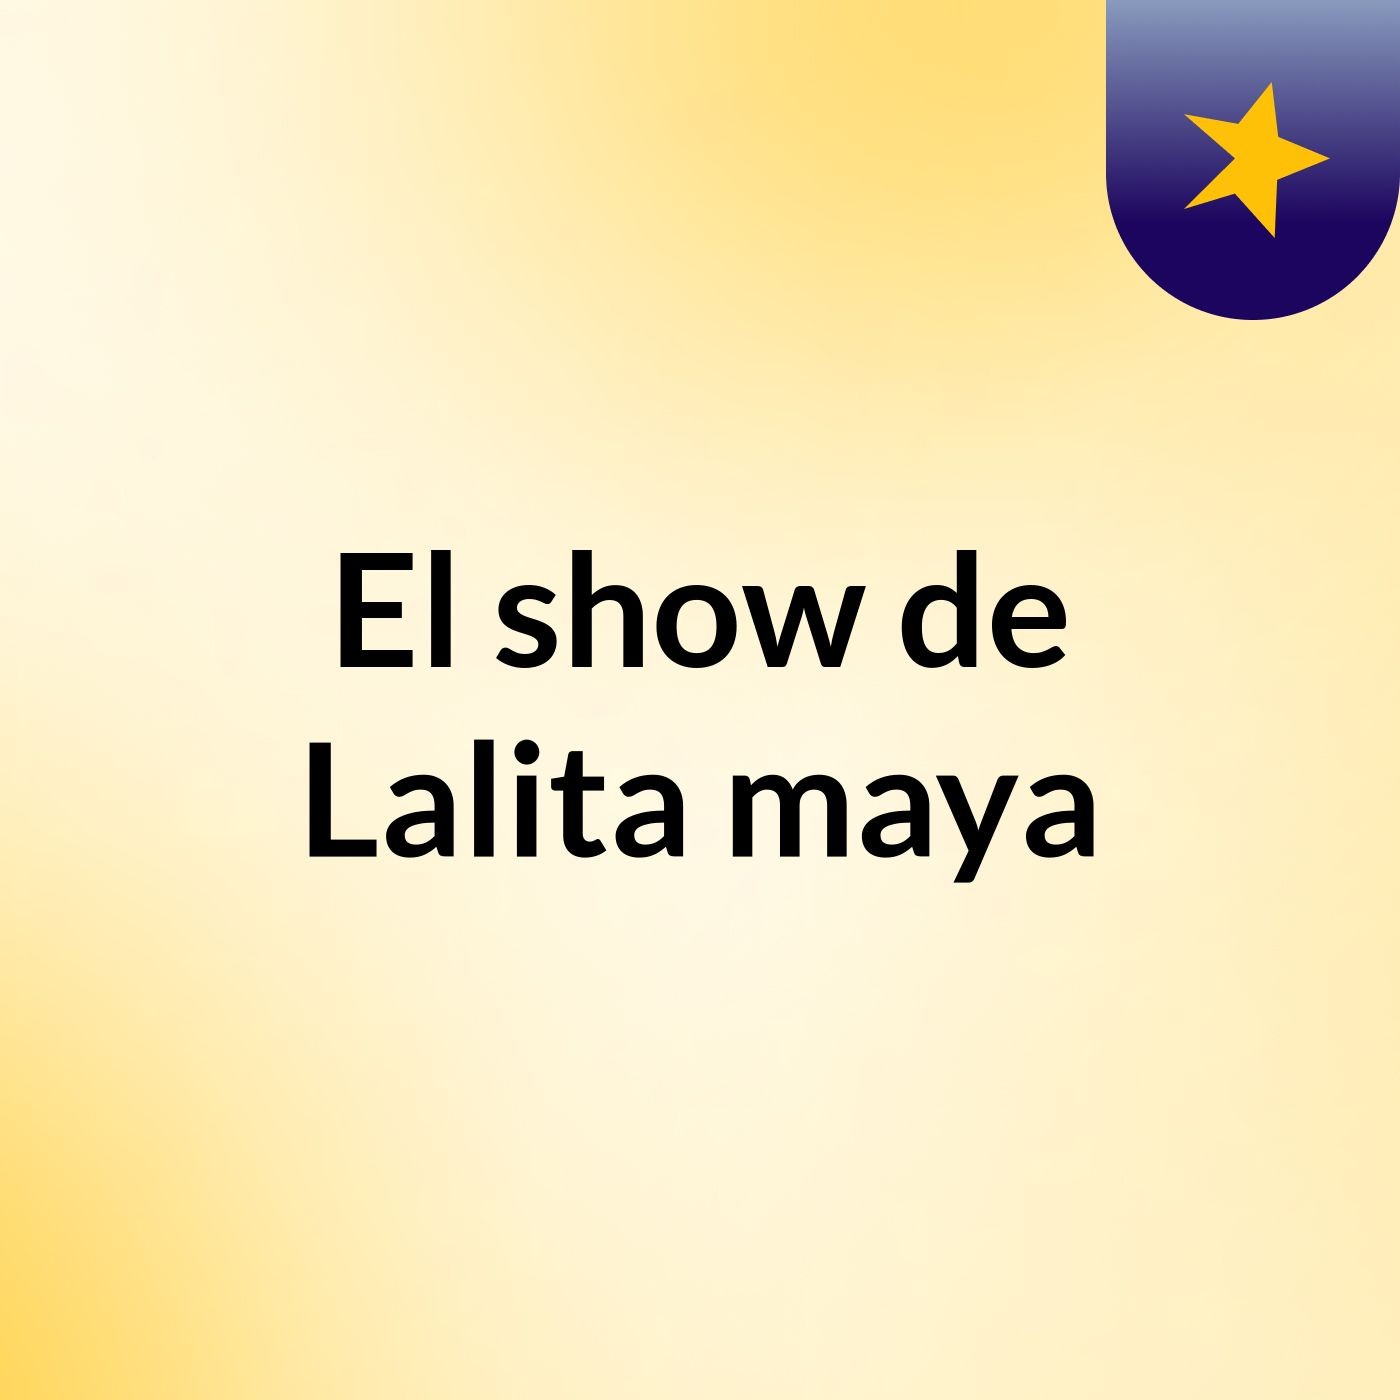 El show de Lalita maya